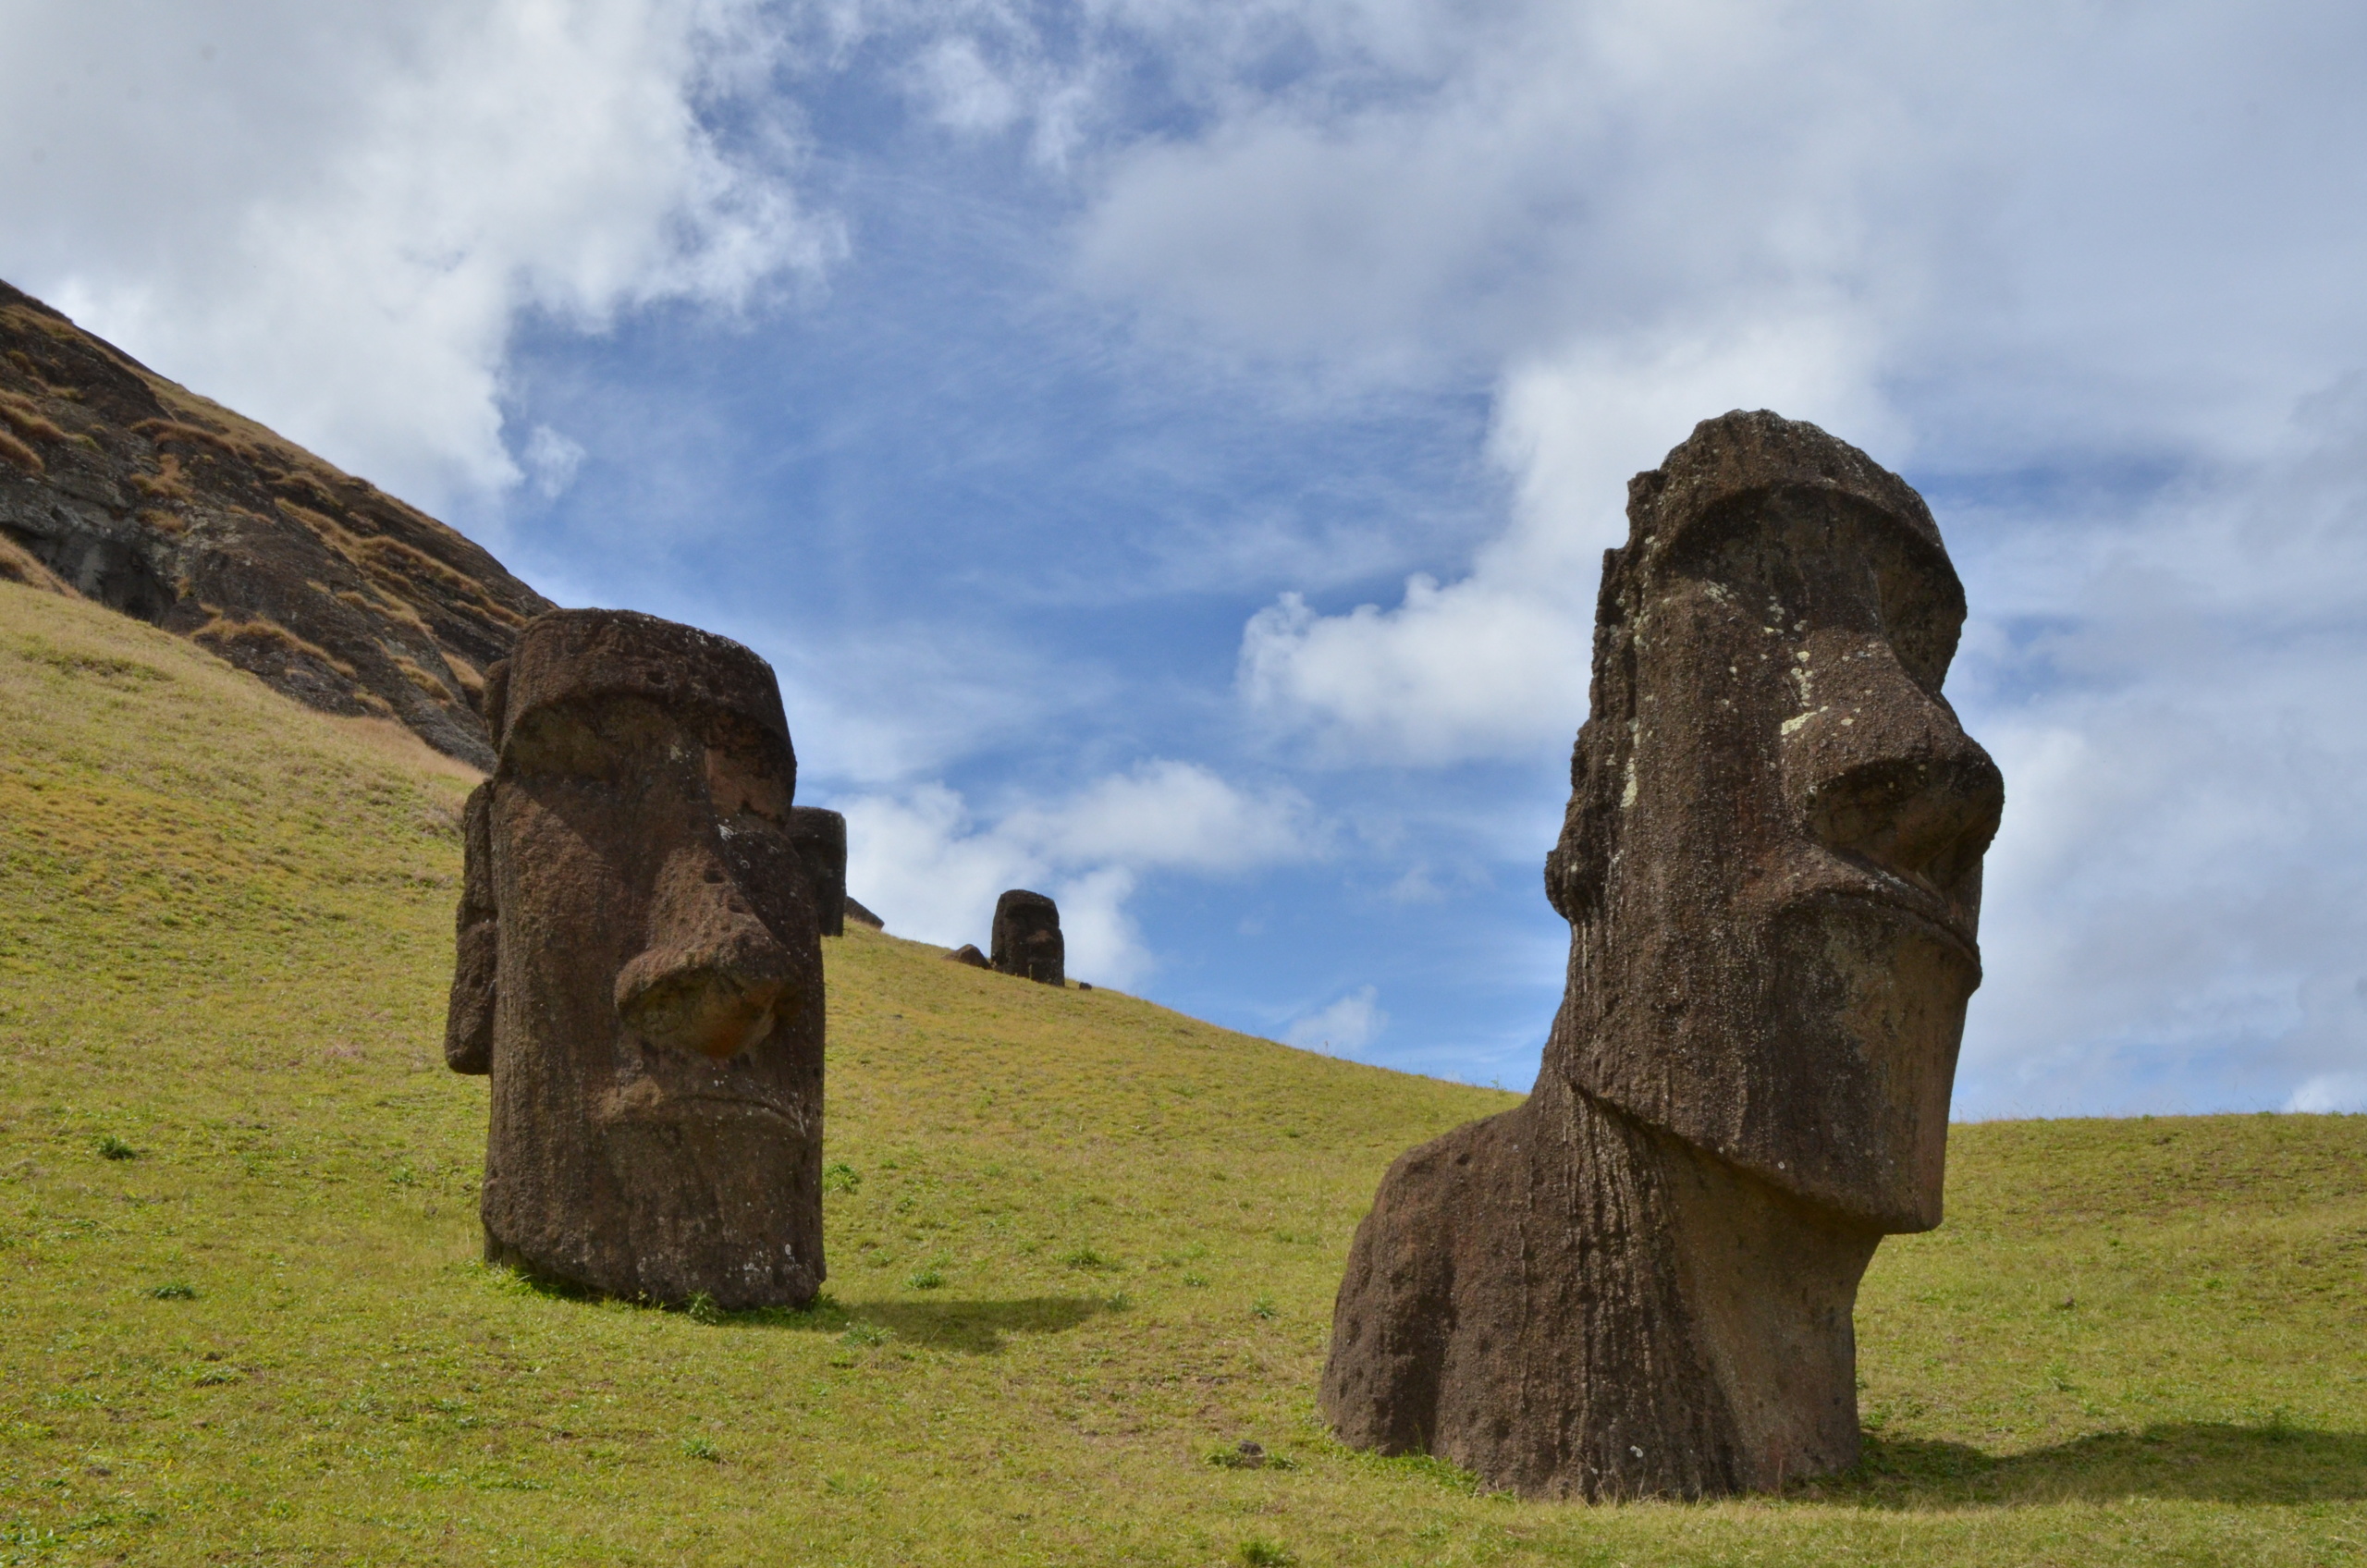 謎の巨大モアイ像が並ぶ 世界遺産 ラパ ヌイ国立公園 のラノ ララク周辺を散策してみた 世界の歩き方